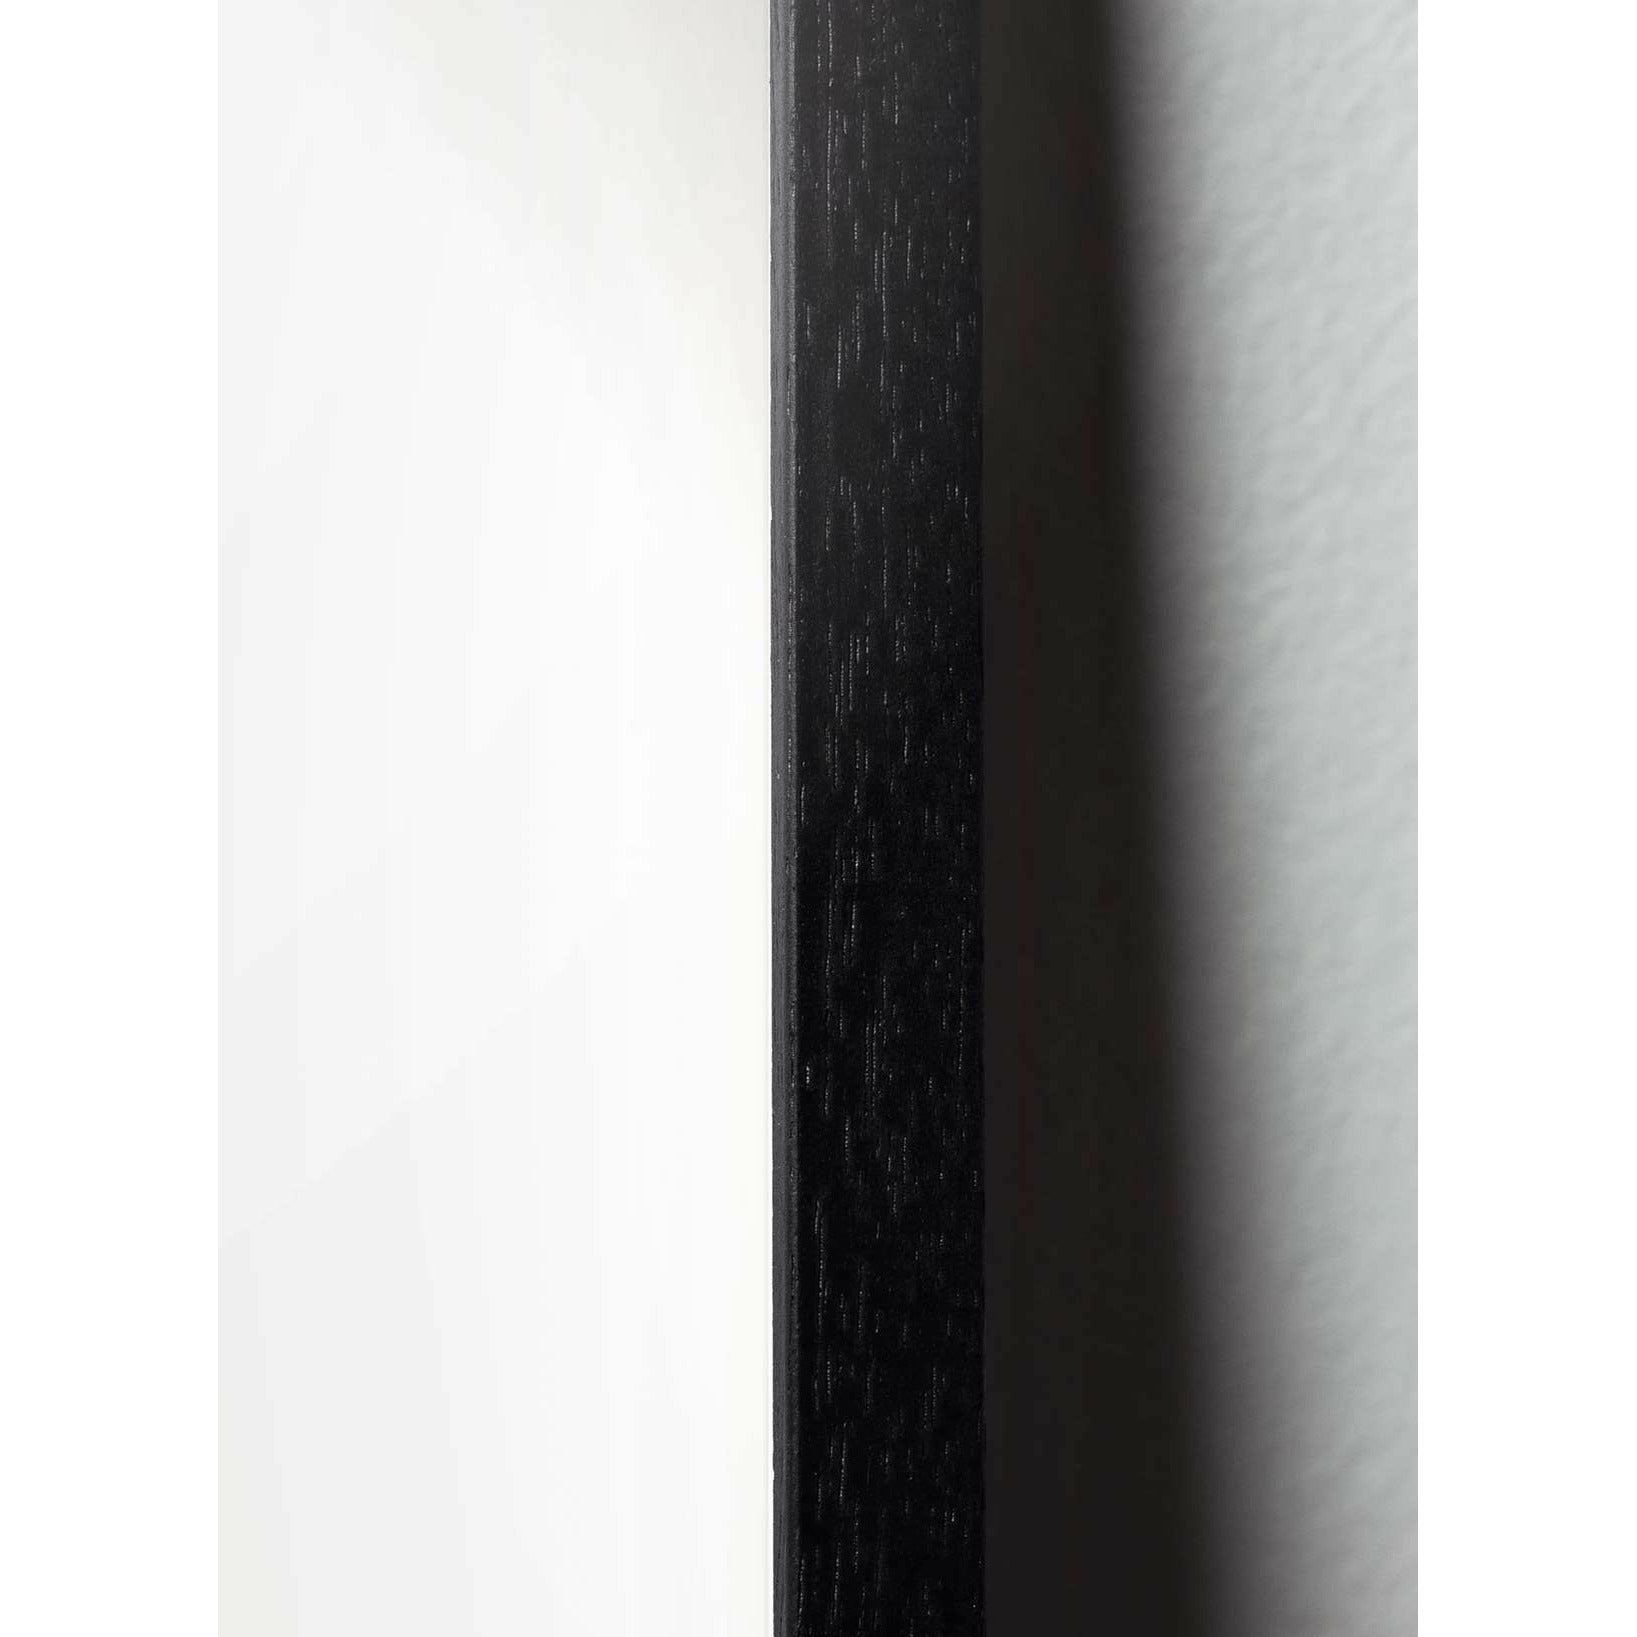 Plakát s labutí labutí, rám v černém lakovaném dřevu A5, modré pozadí